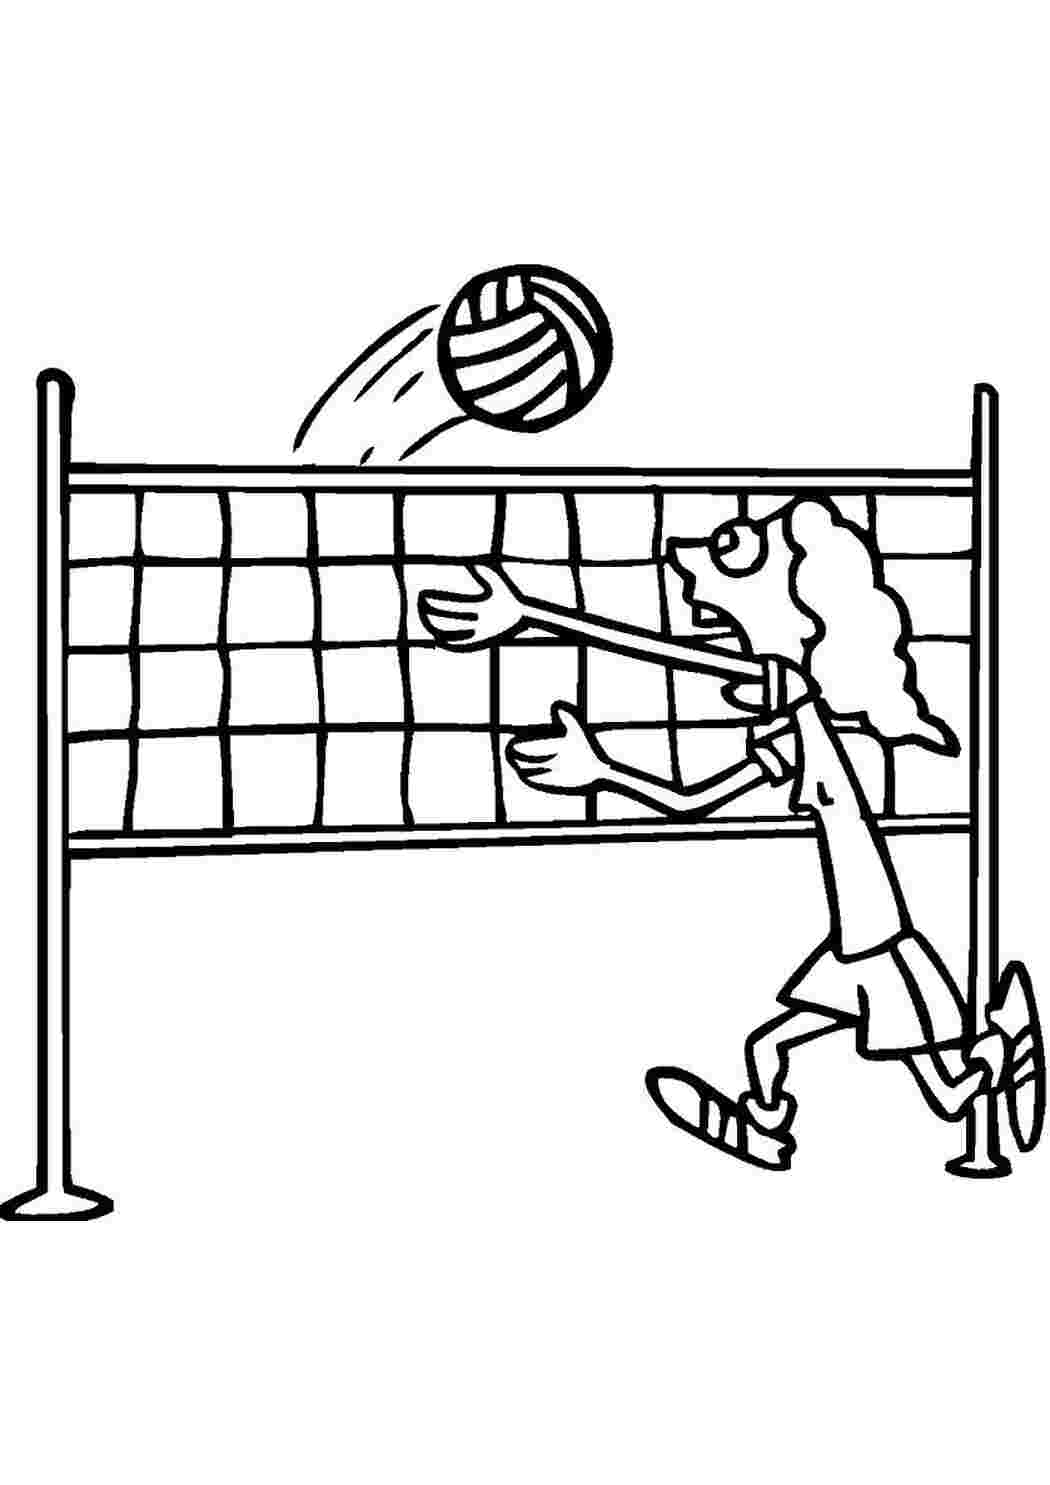 Рисунки на тему волейбол легкие